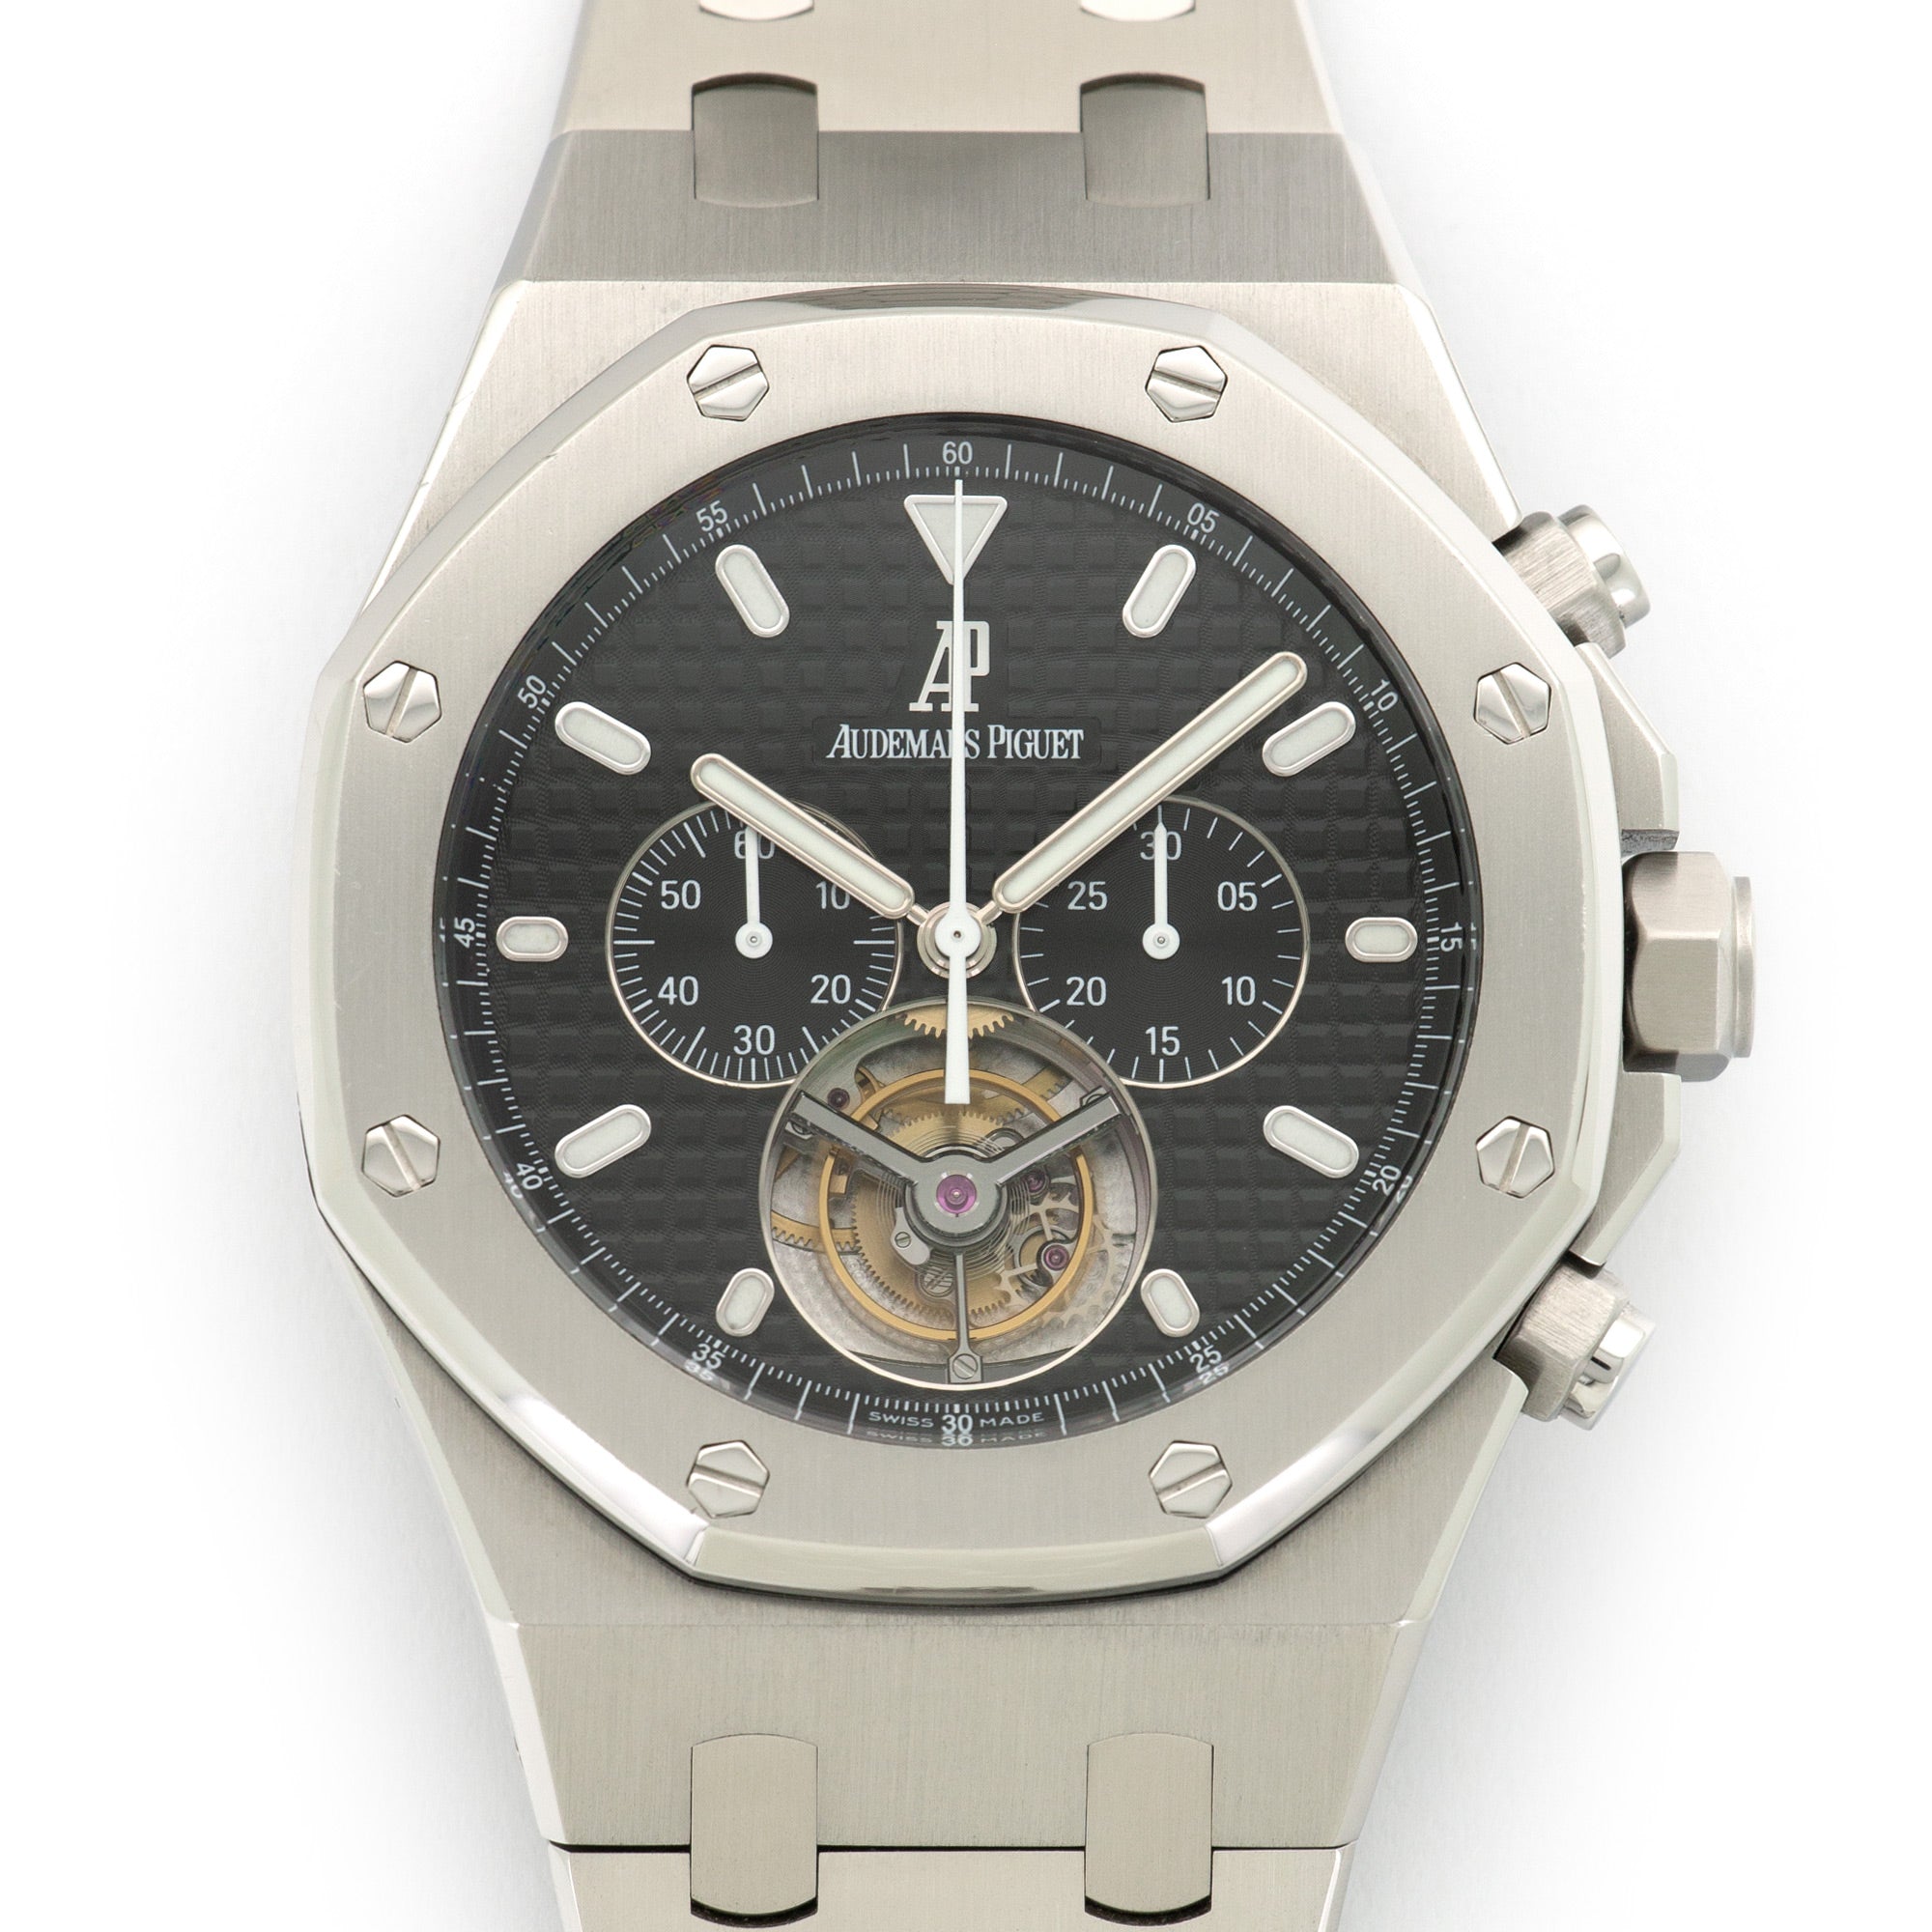 Audemars Piguet - Audemars Piguet Royal Oak Chronograph Tourbillon Watch Ref. 25977 - The Keystone Watches